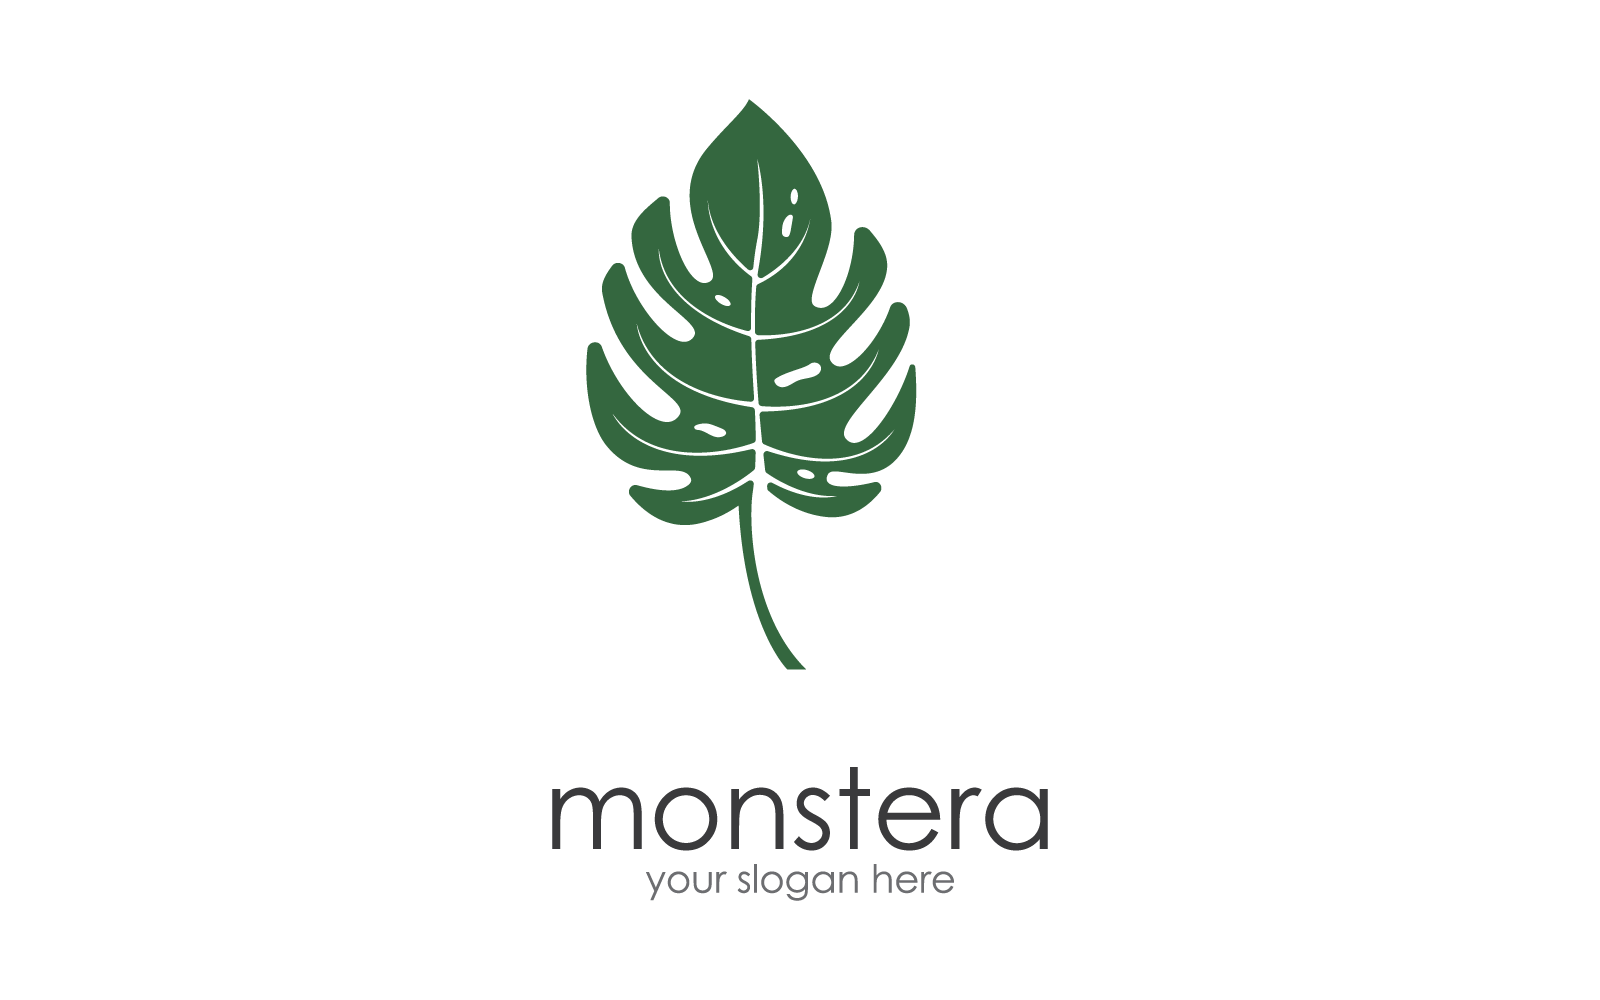 Monstera leaf logo illustration vector flat design template